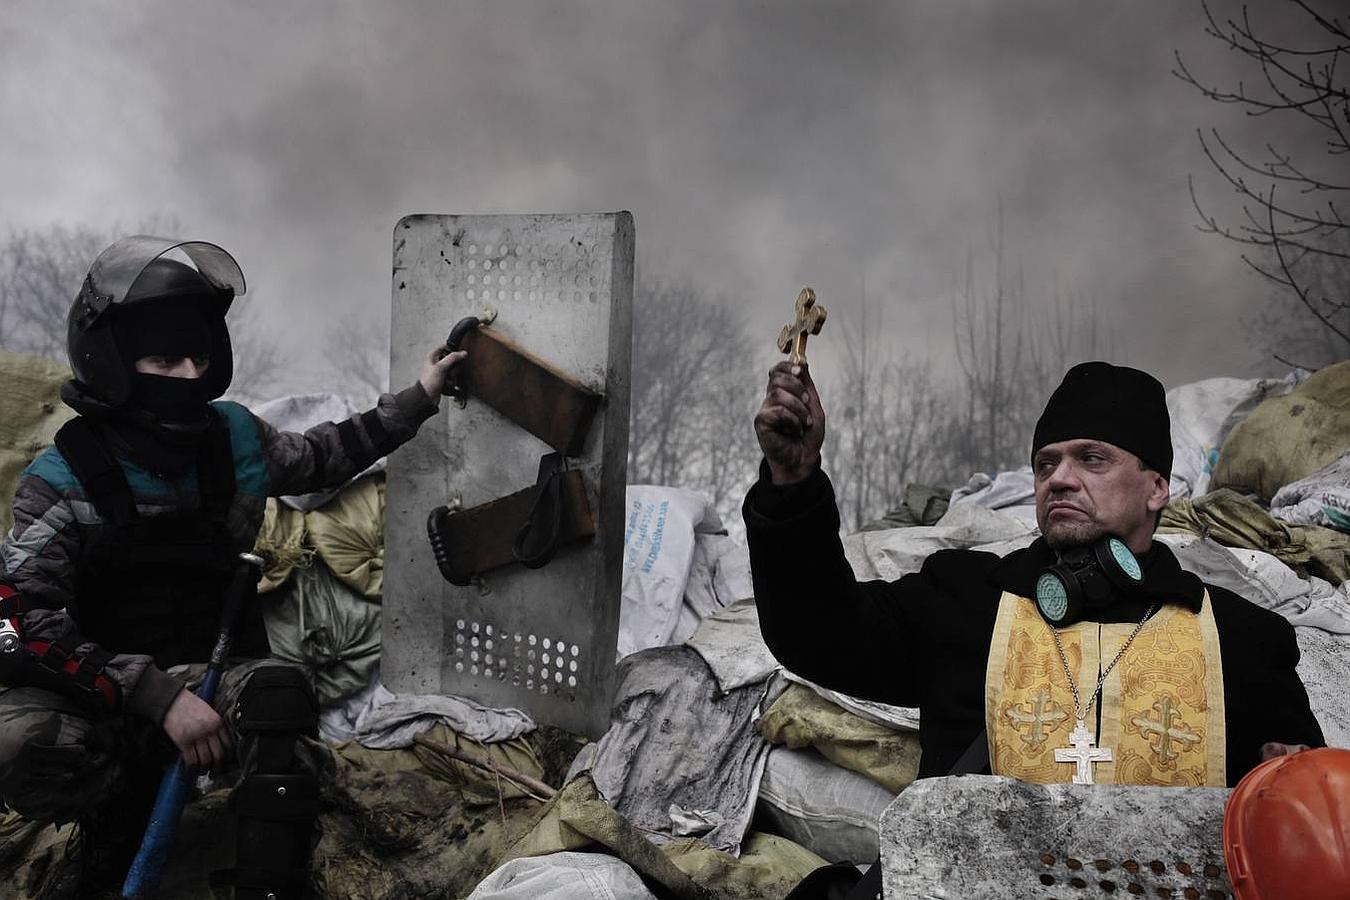 El fotorreportero francés de la agencia Magnum, Jerome Sessini, publicó en De Standaard esta fotografía tomada en los incidentes de Kiev, Ucrania en febrero de 2014.